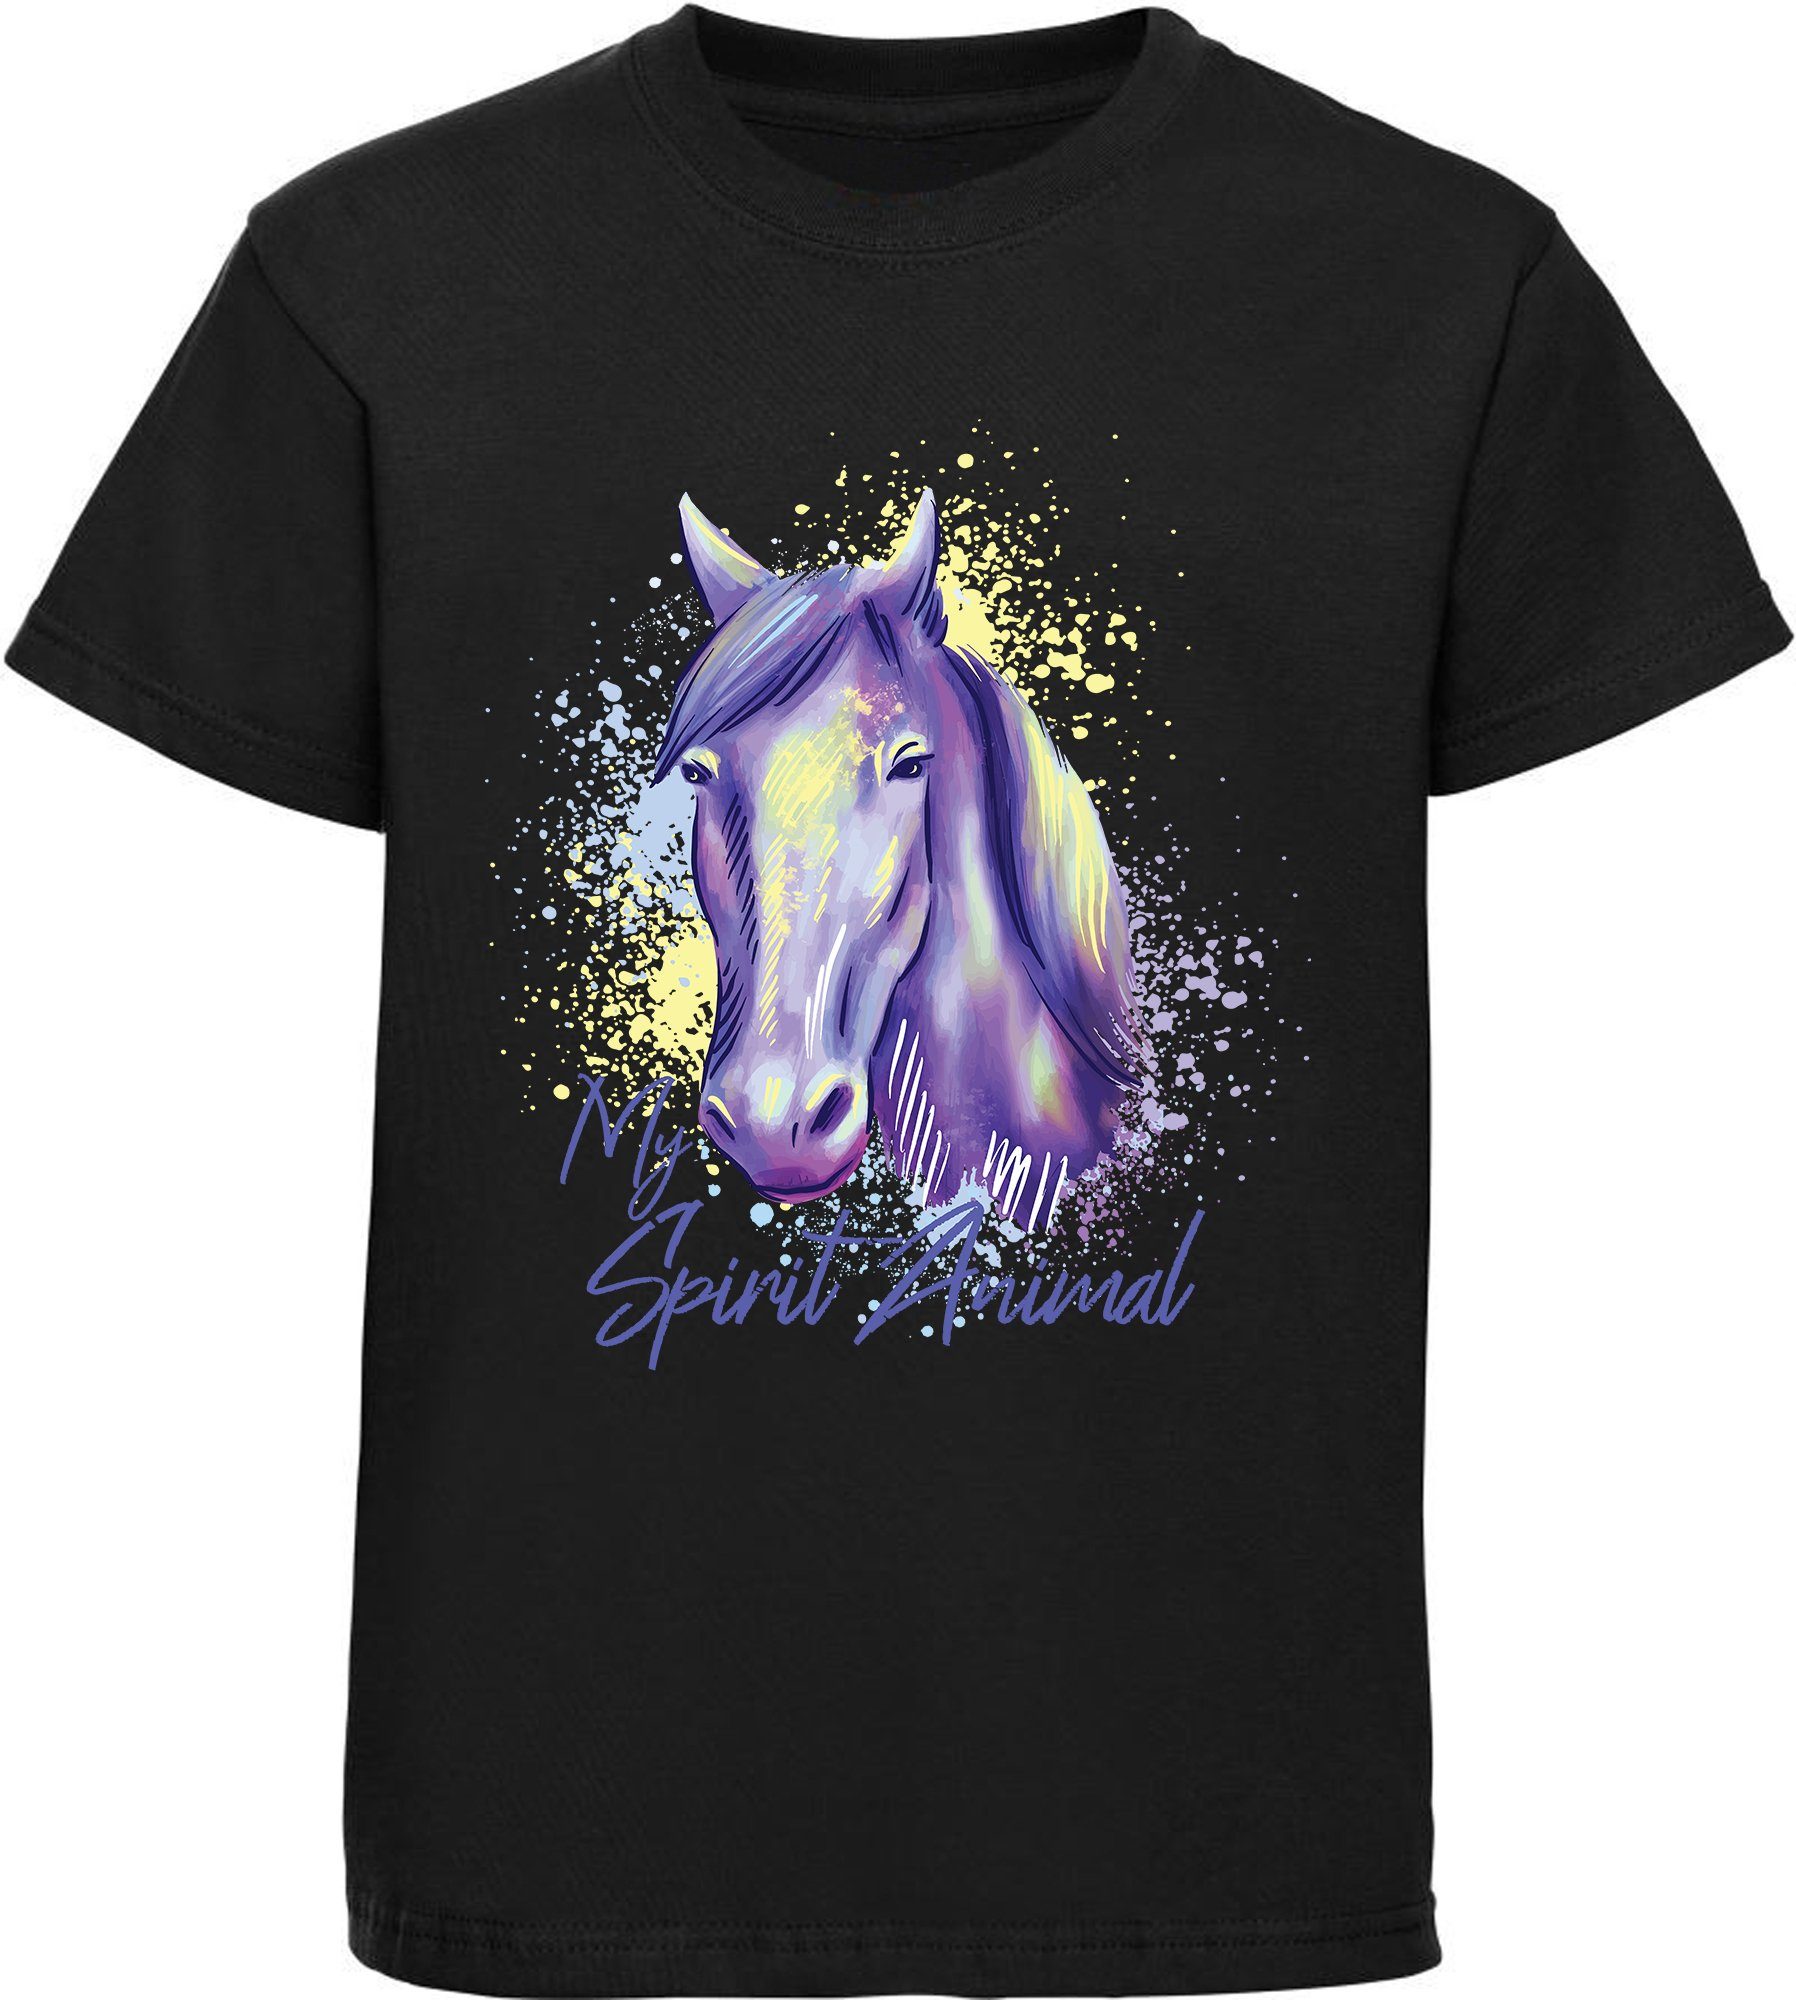 MyDesign24 Print-Shirt bedrucktes Mädchen T-Shirt gemalter Pferdekopf Baumwollshirt mit Aufdruck, i158 schwarz